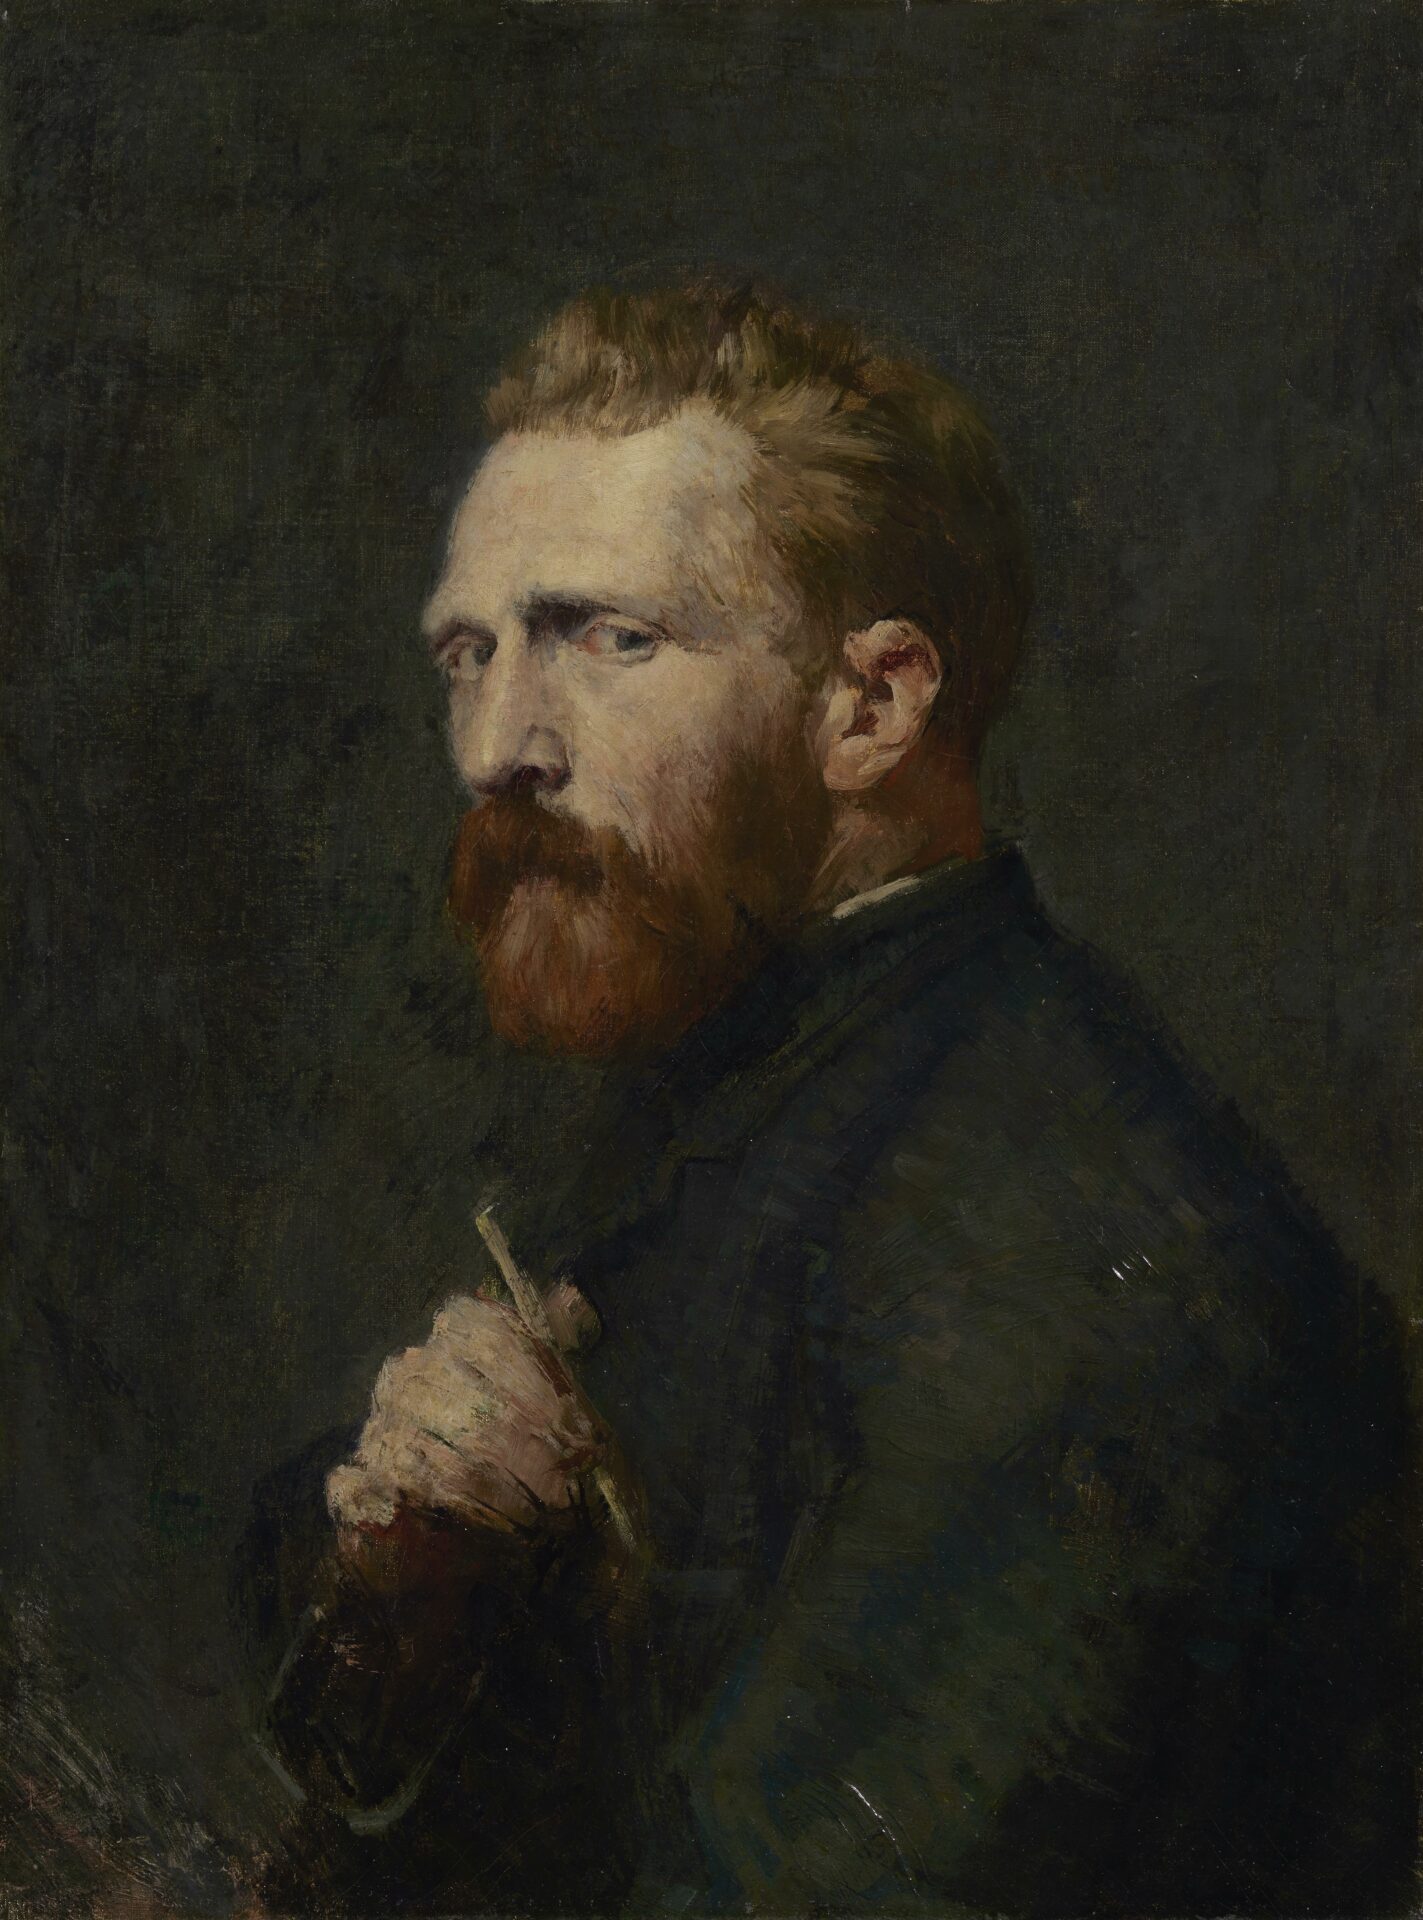 Los últimos meses de experimentación creativa de Van Gogh, llegan al Museo de Orsay